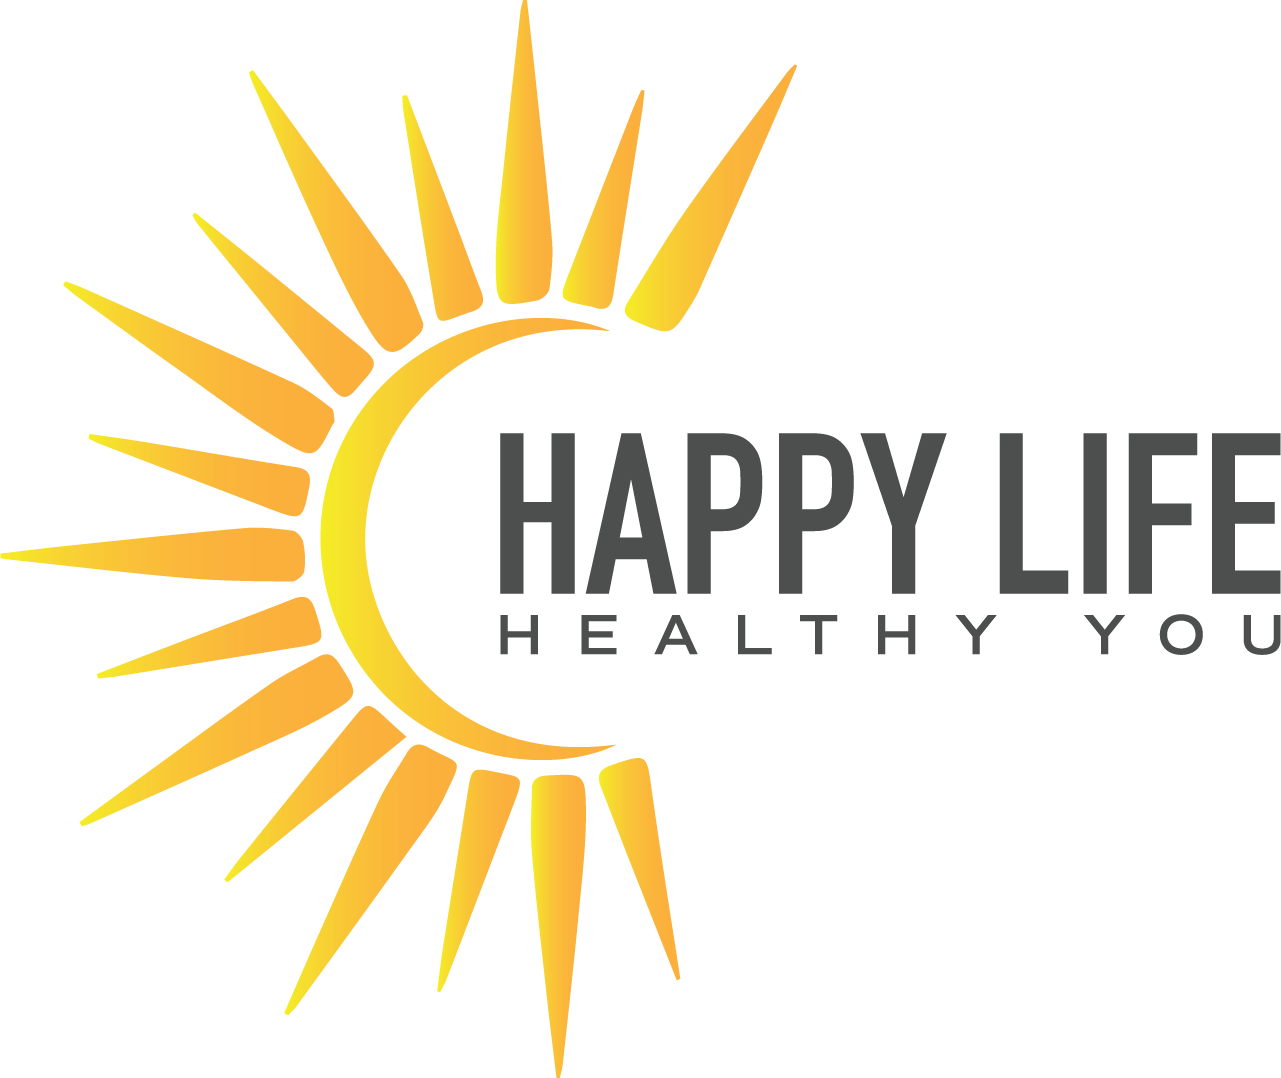 Happy Life Healthy You